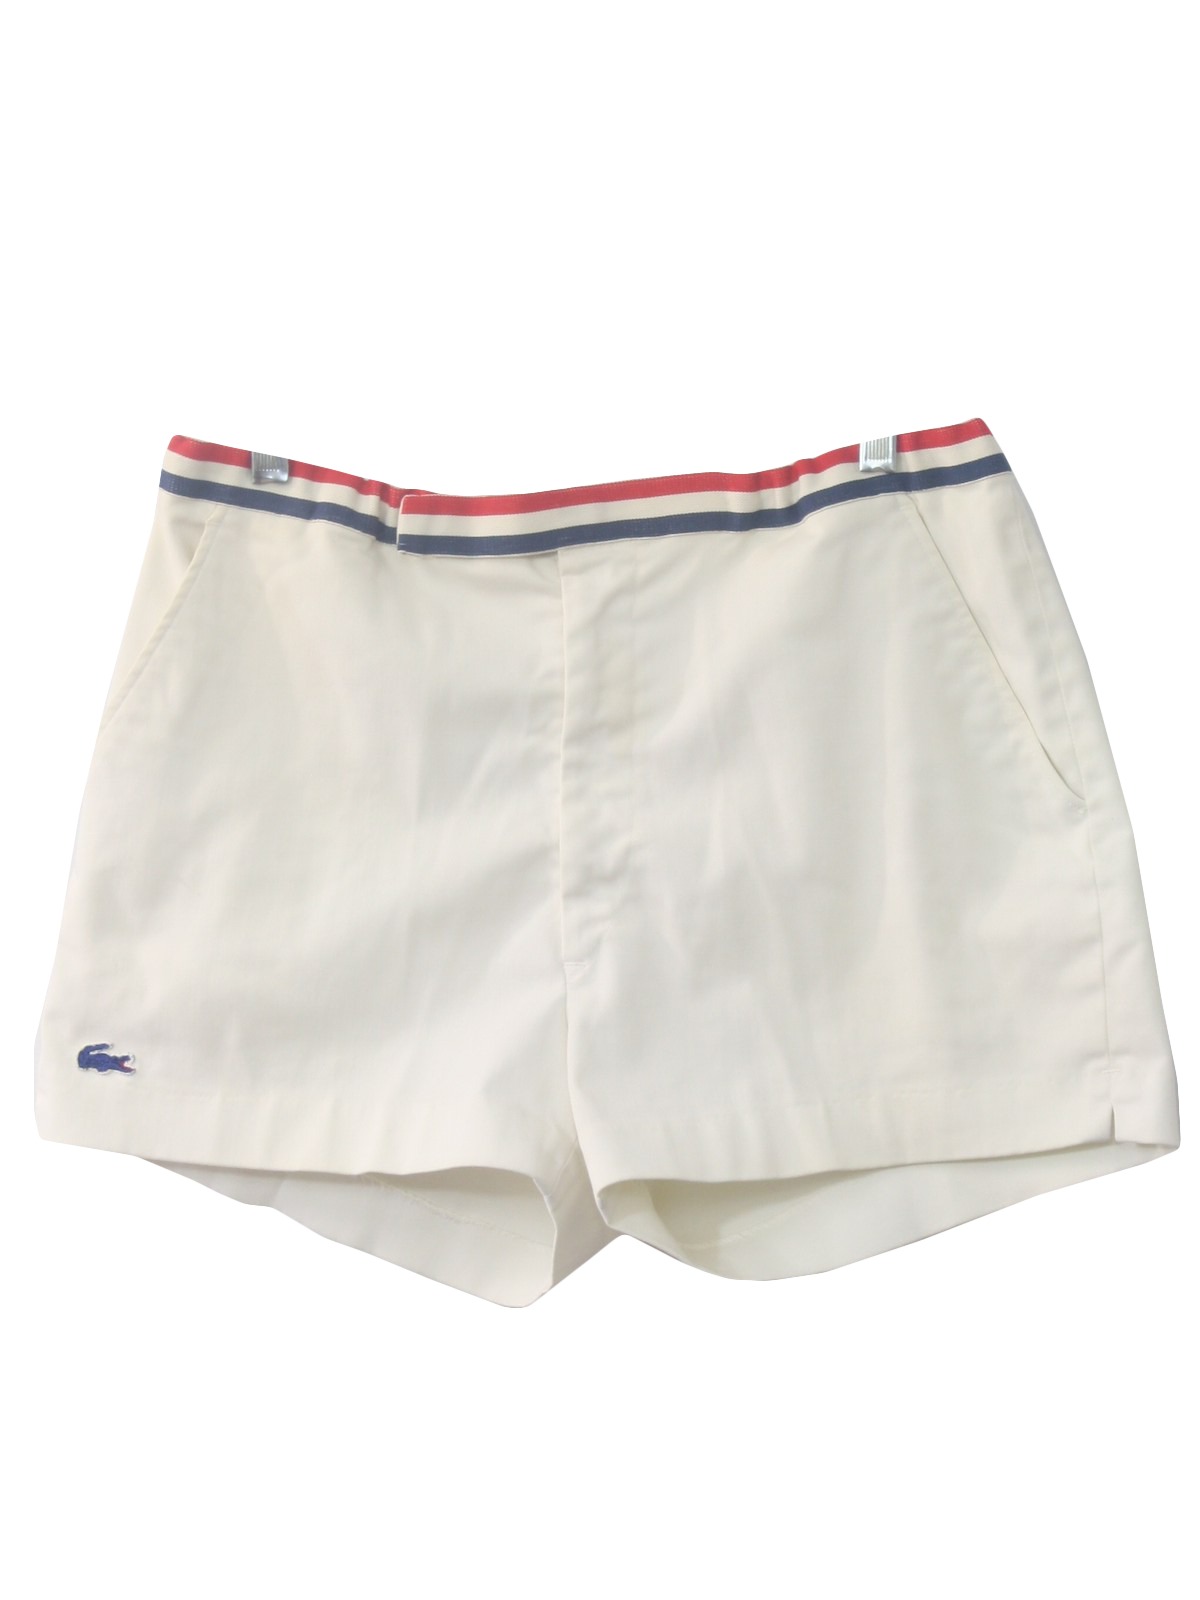 lacoste men's tennis shorts